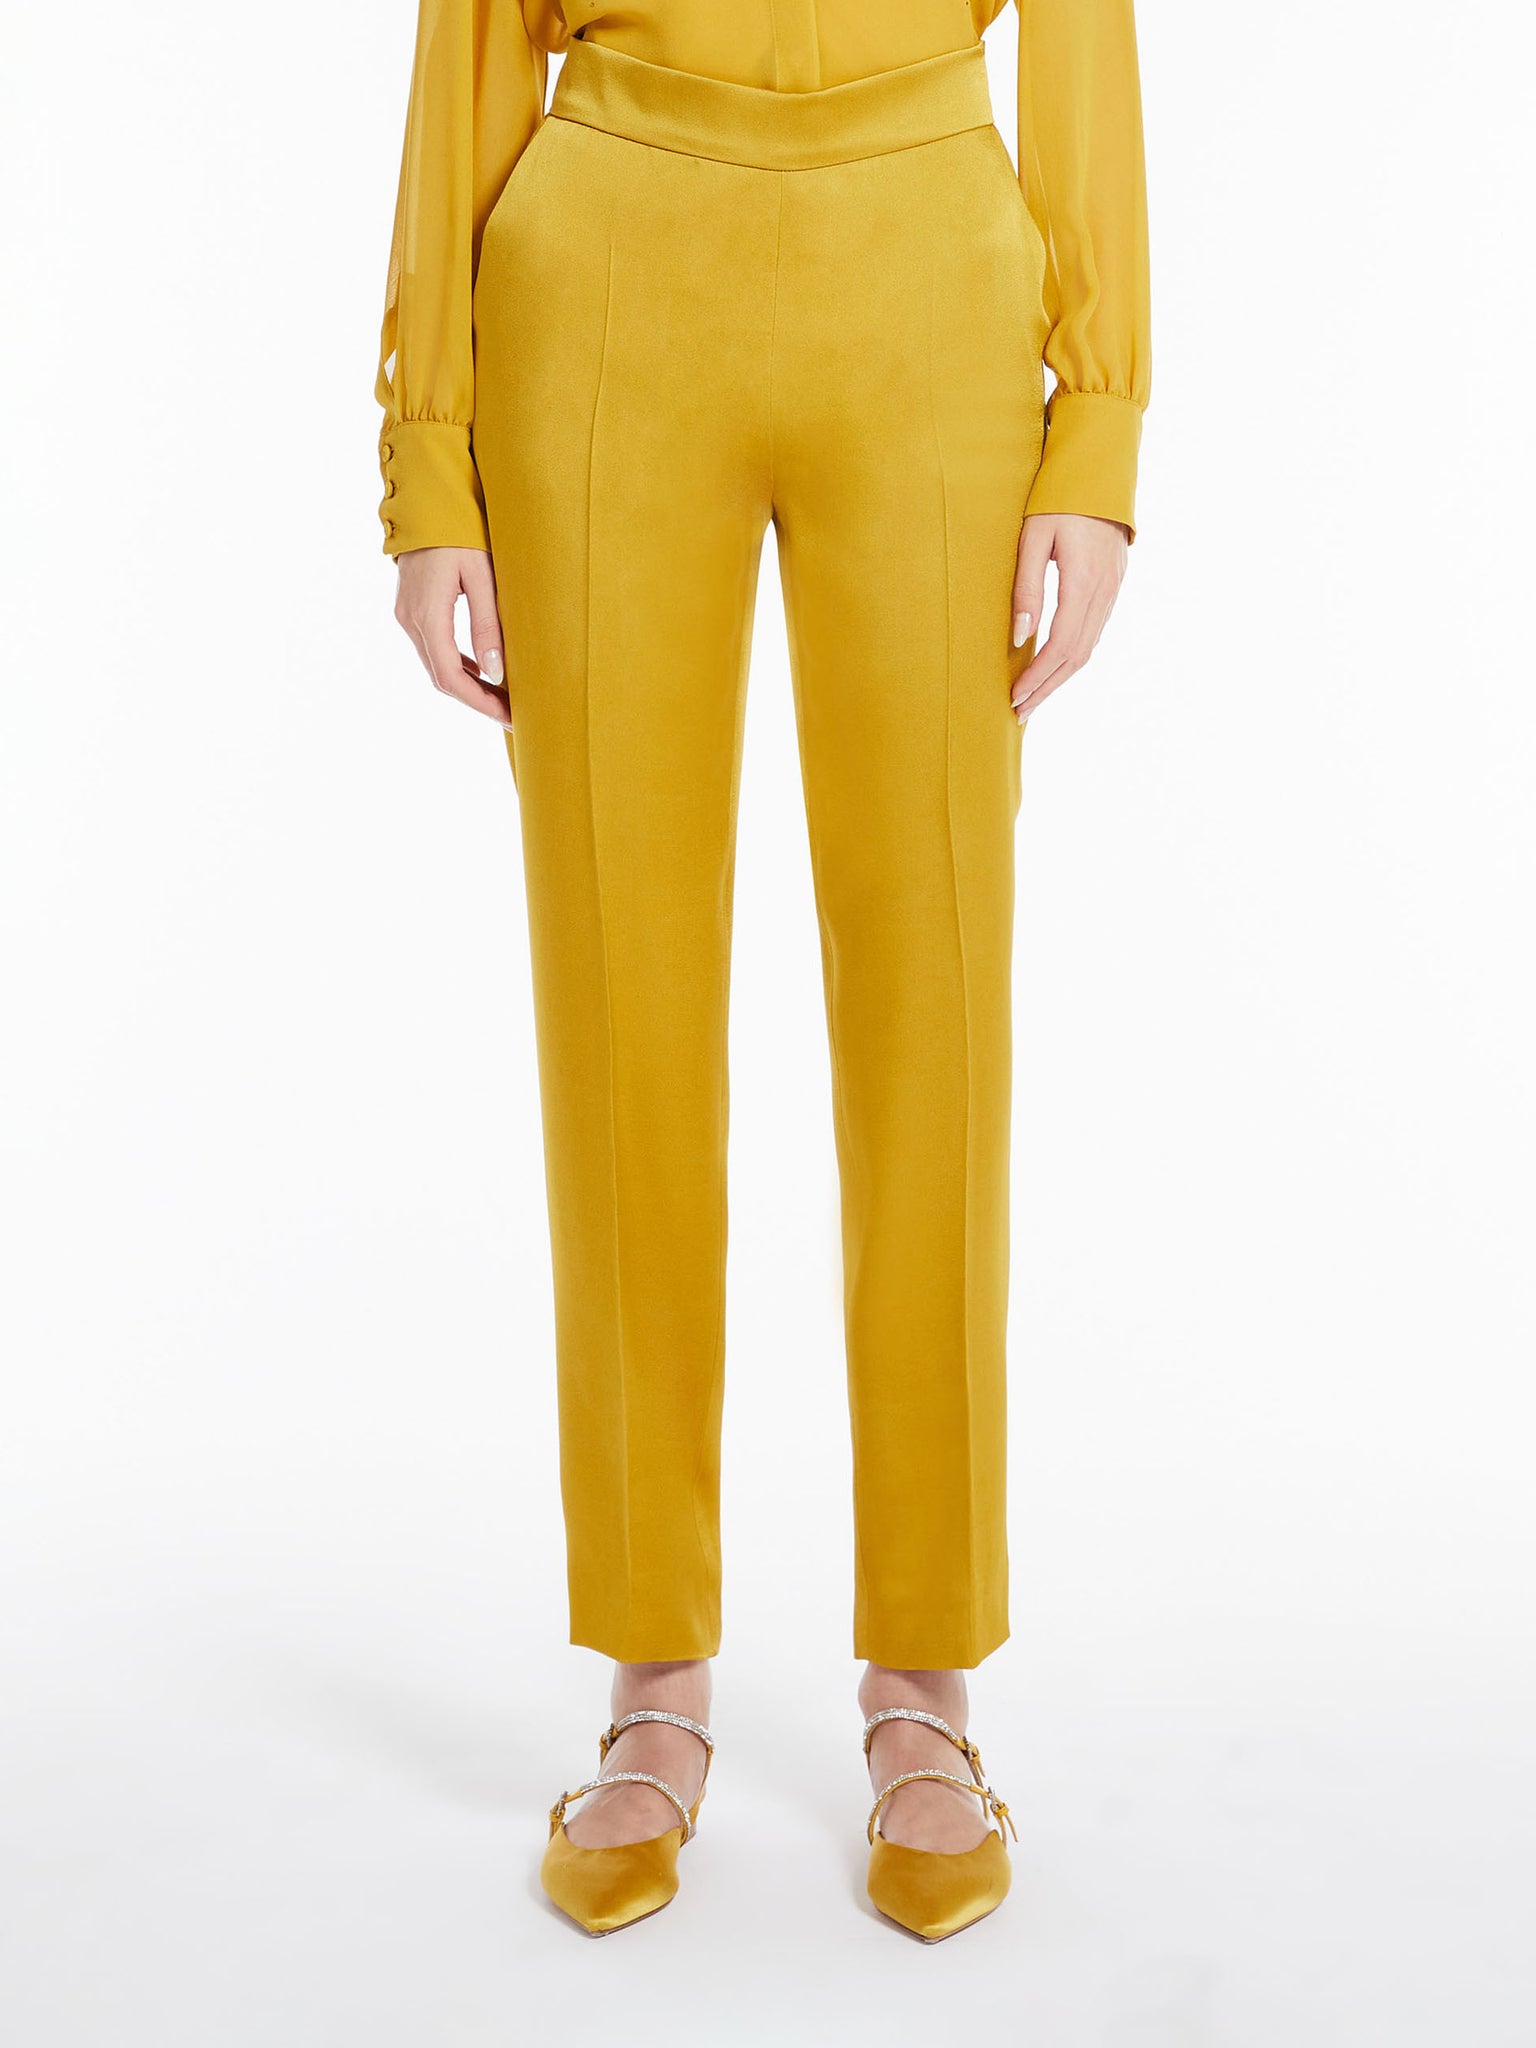 Pantalone in Enver Satin / Giallo - Ideal Moda